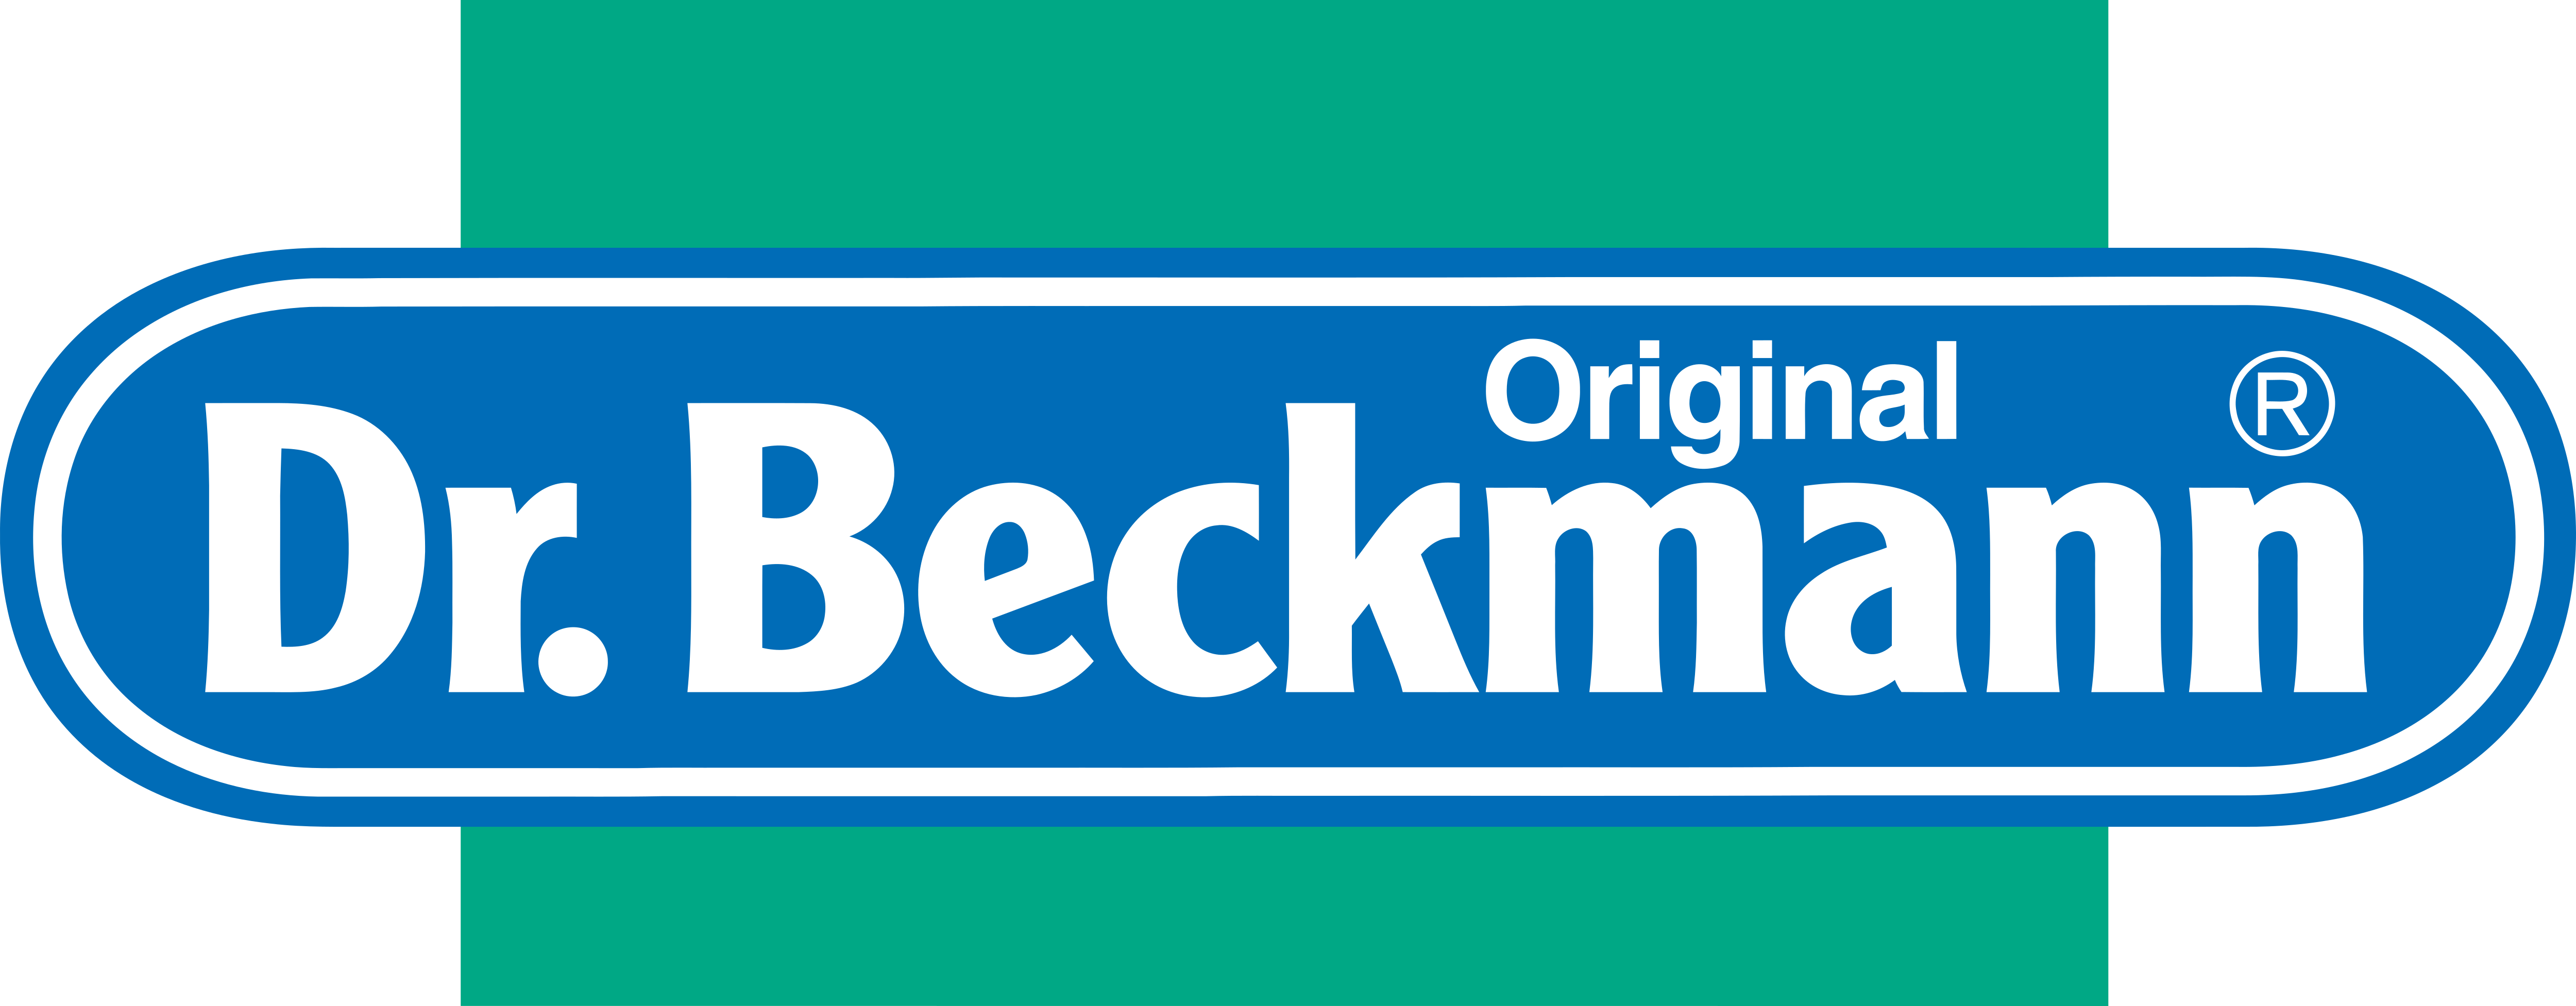 DR BECKMANN